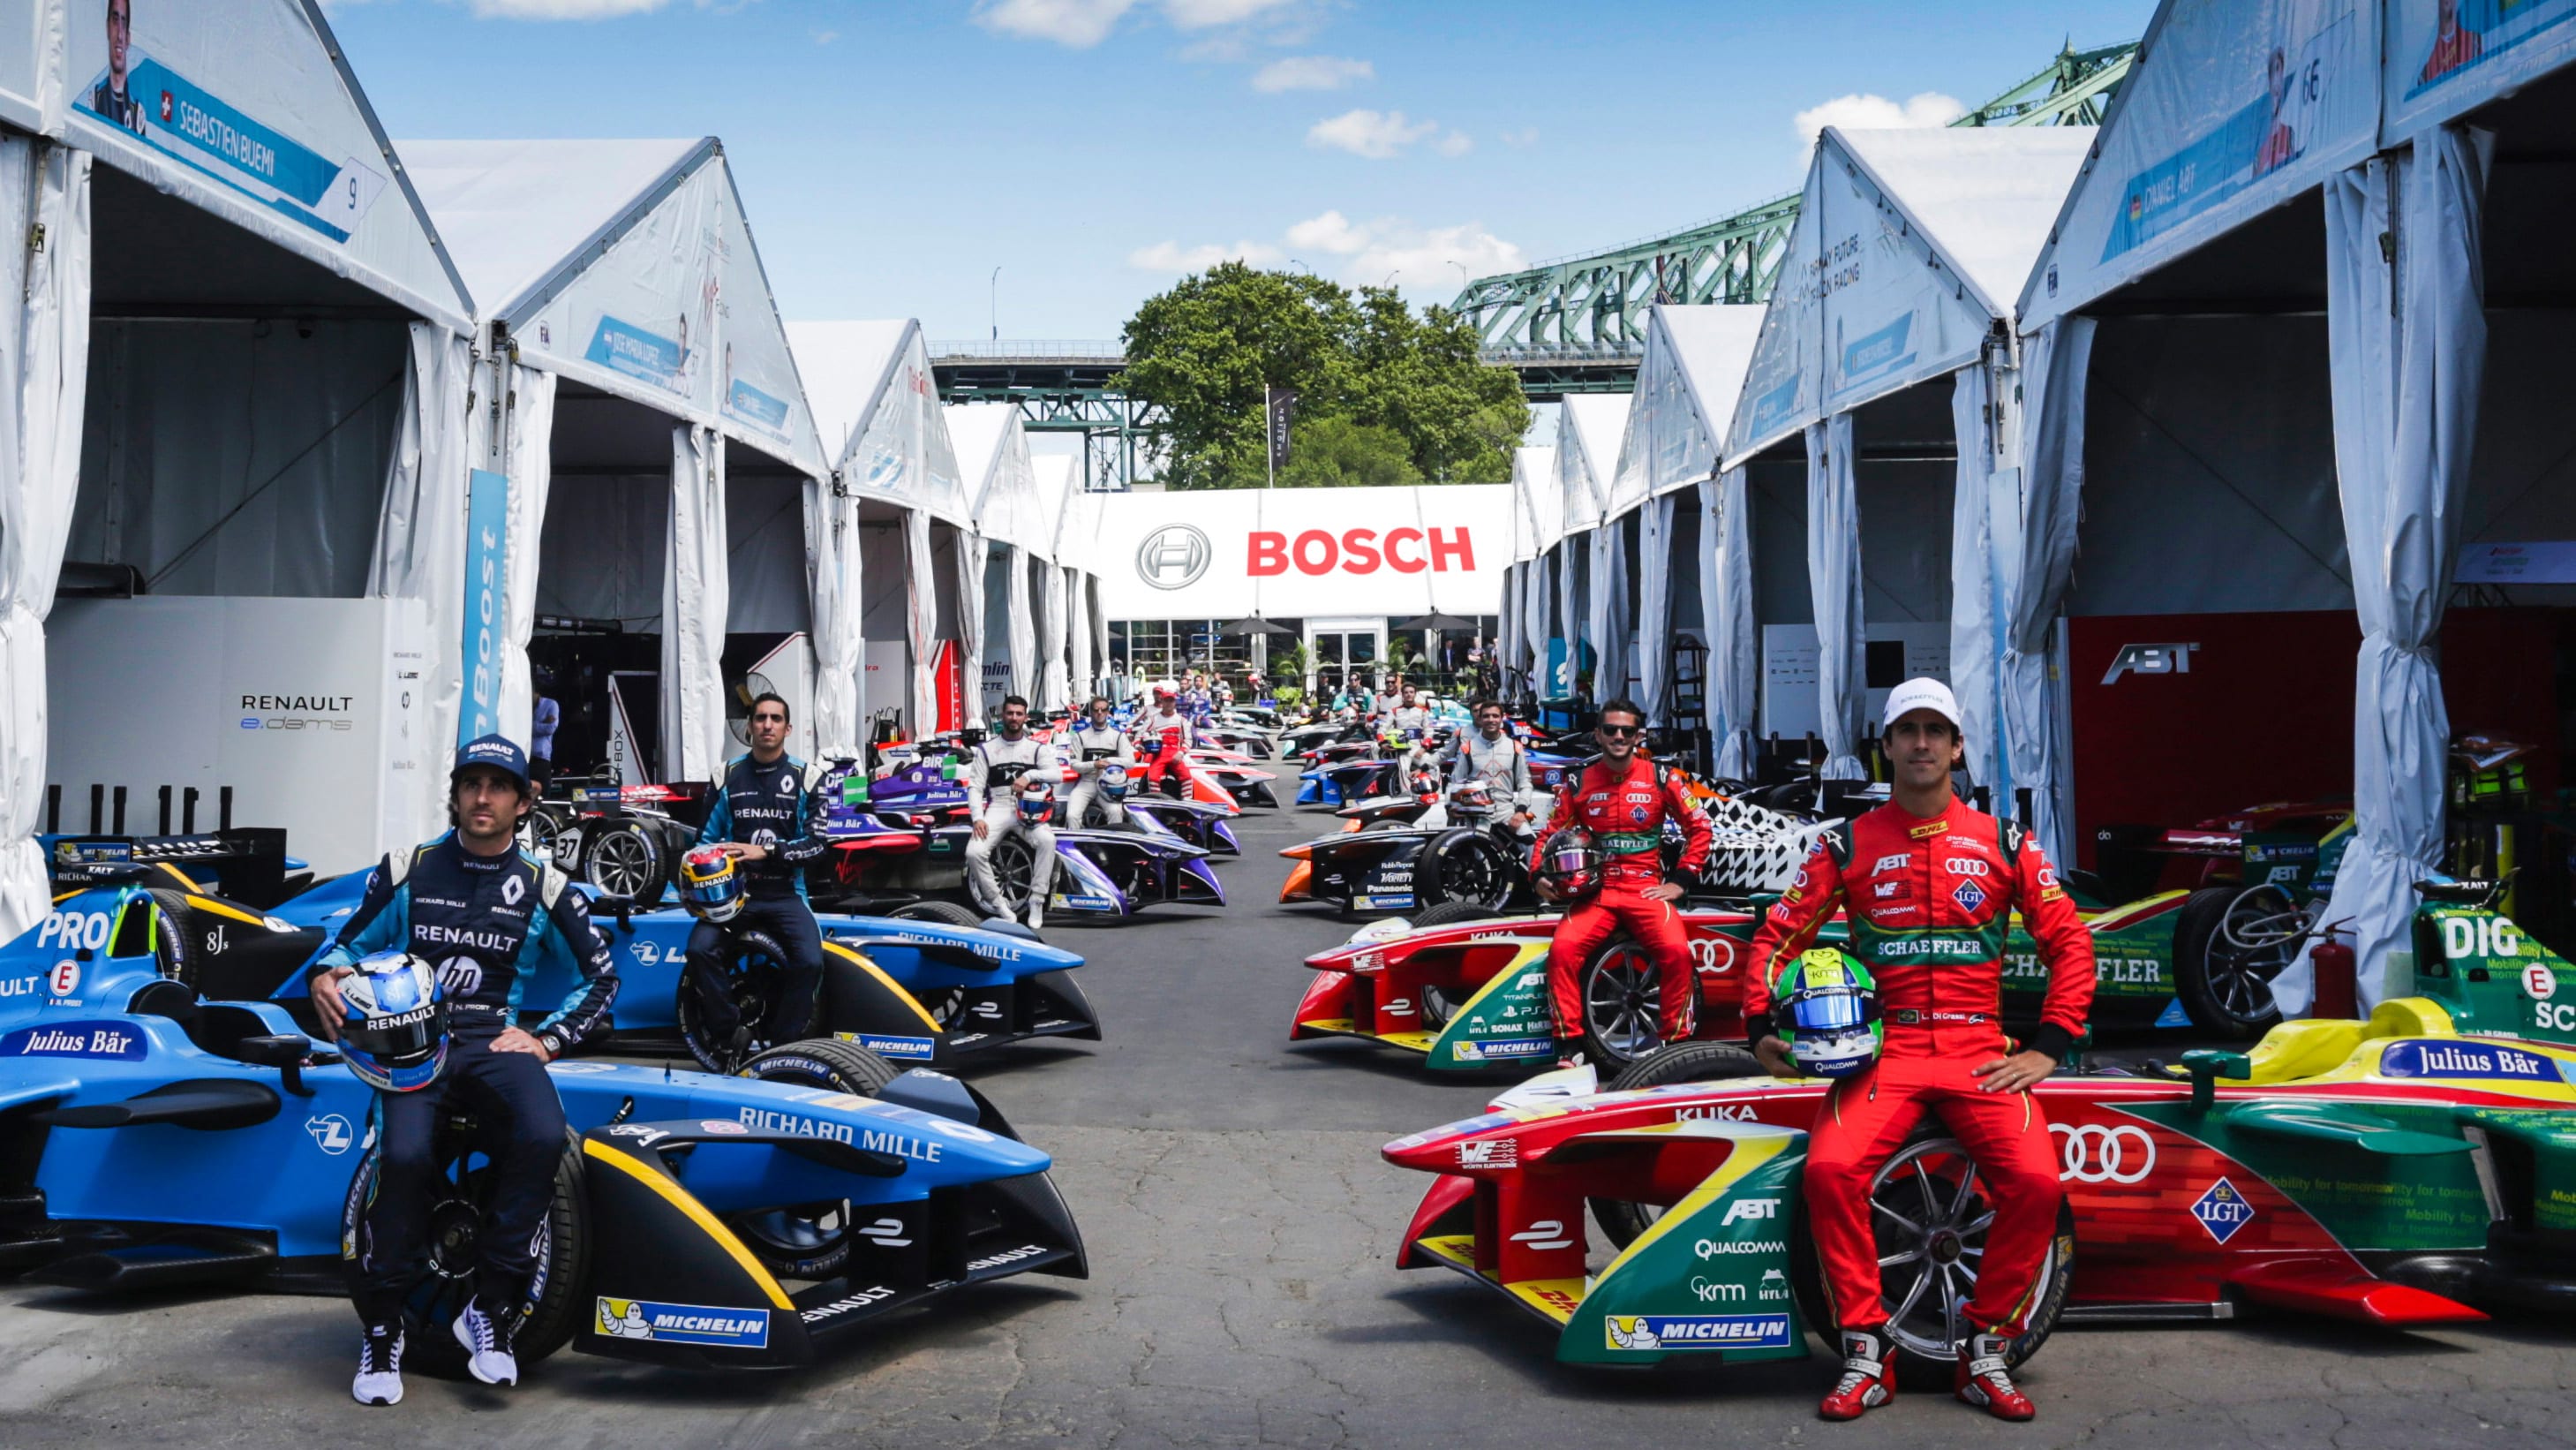 Bosch announces sponsorship of Formula E